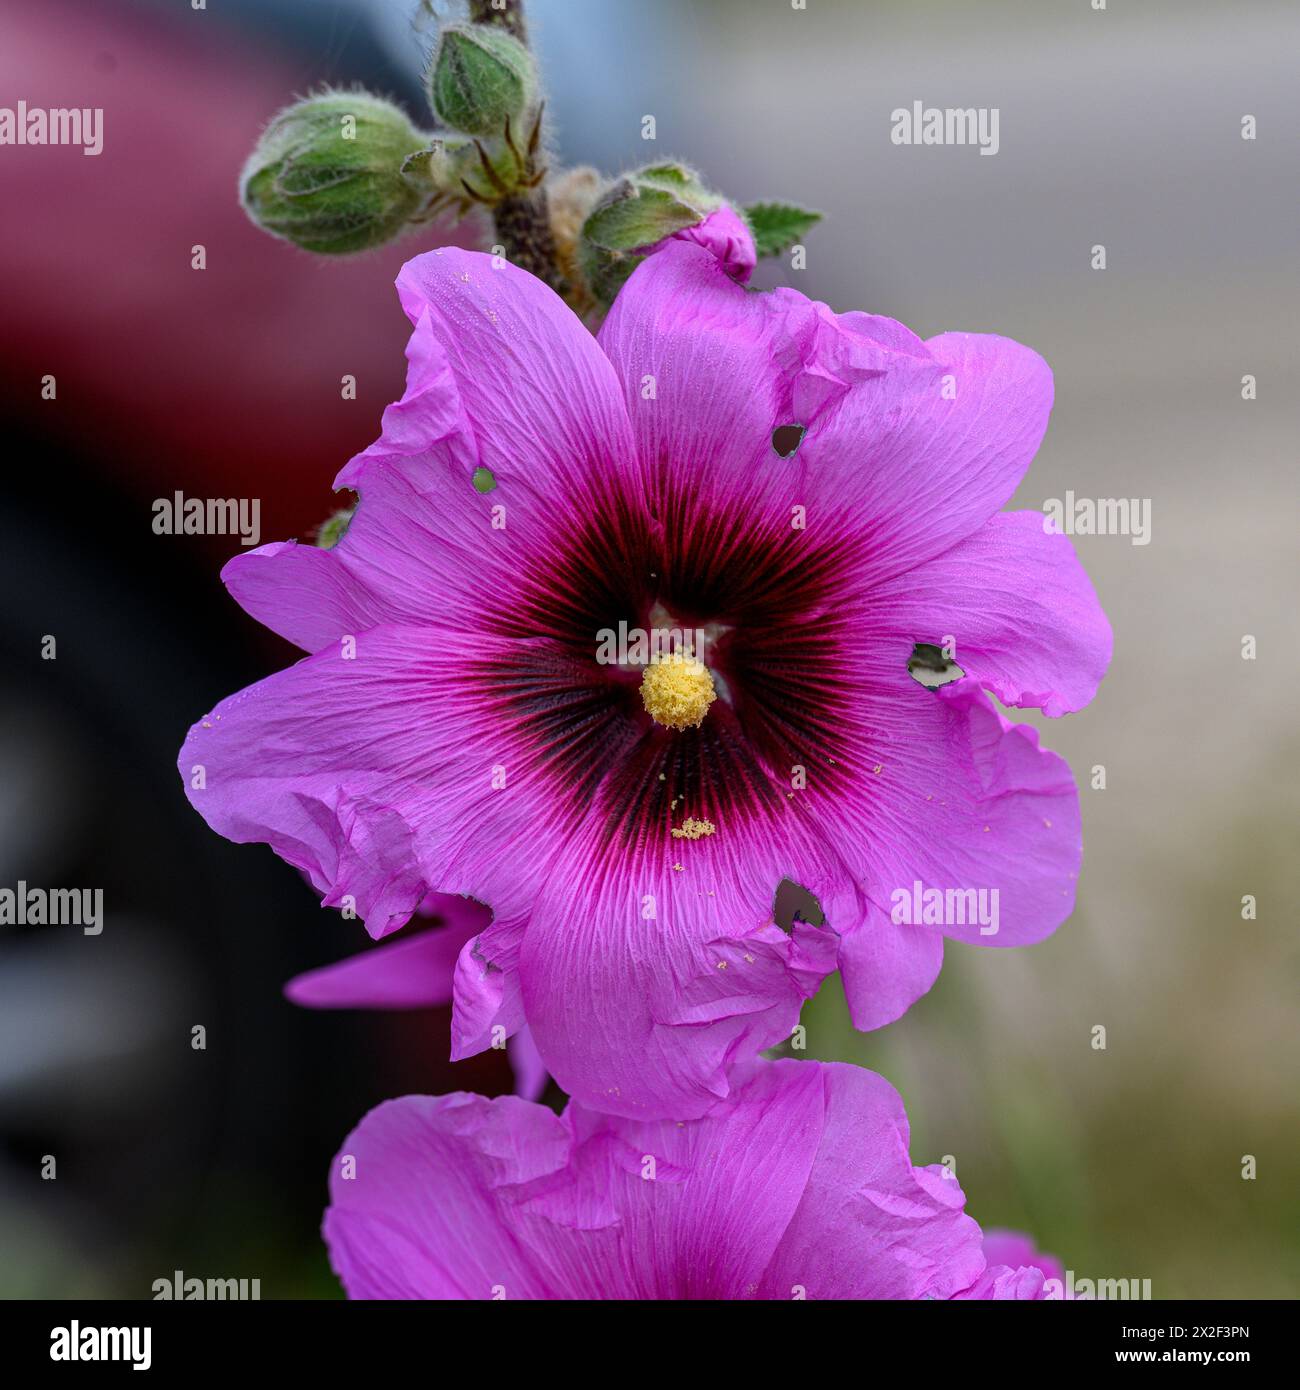 Primo piano dei fiori rosa e dei boccioli del Bristly Hollyhock (Alcea setosa) خطميه fotografato nella bassa Galilea, Israele, a marzo Foto Stock